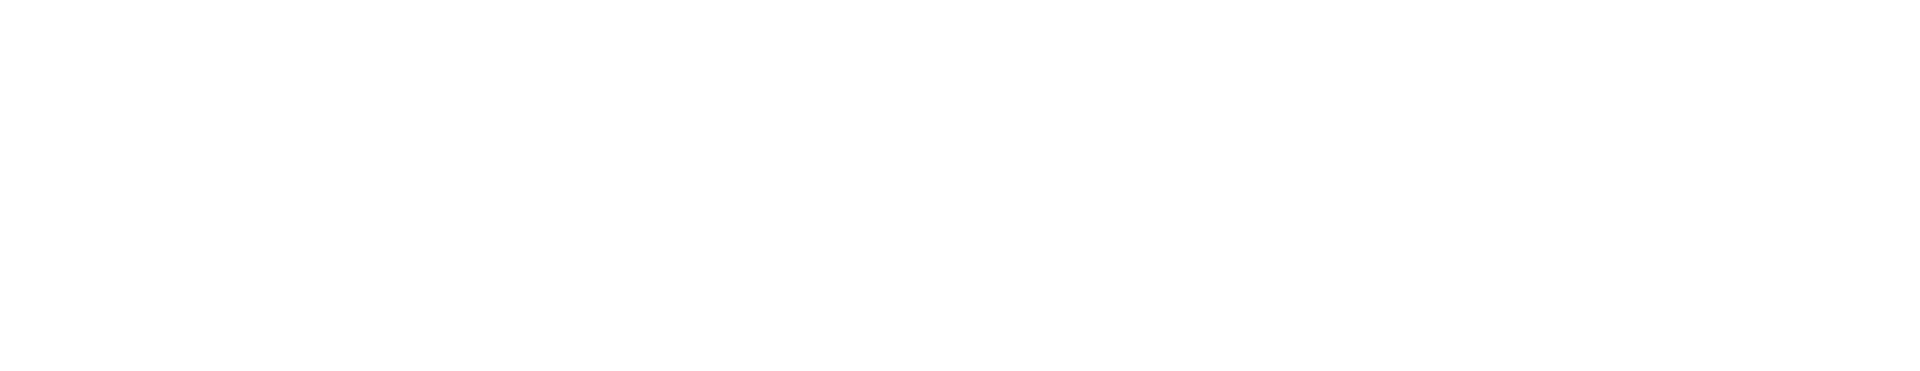 bgn-white-curve-bottom-left